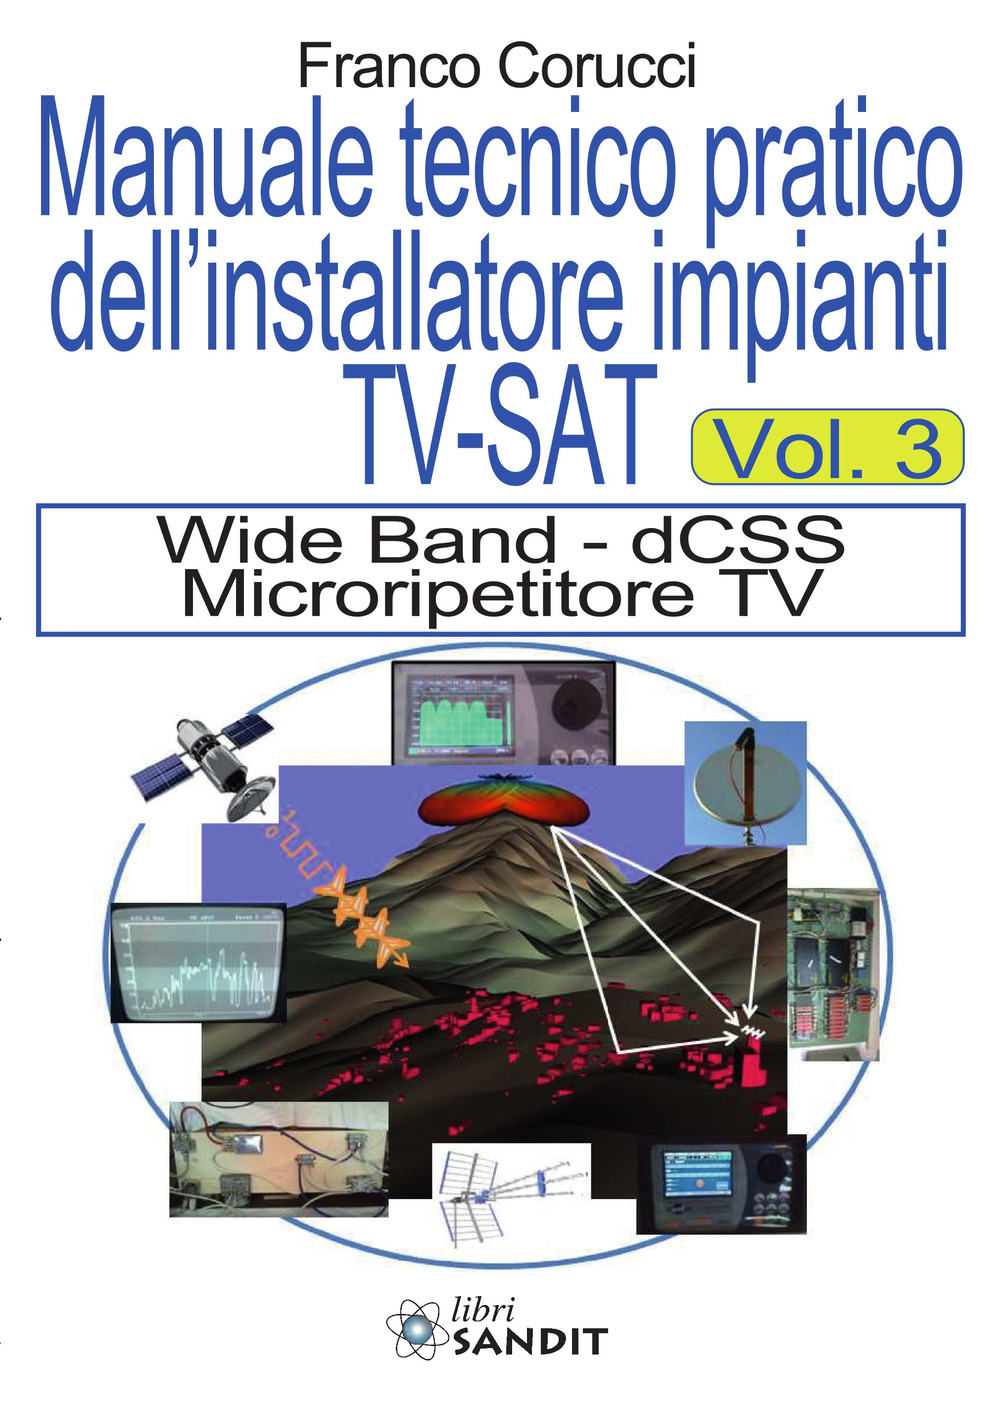 Il manuale tecnico pratico dell'installatore impianti Tv-SAT. Vol. 3: Wide Band - dCSS Microripetitore TV